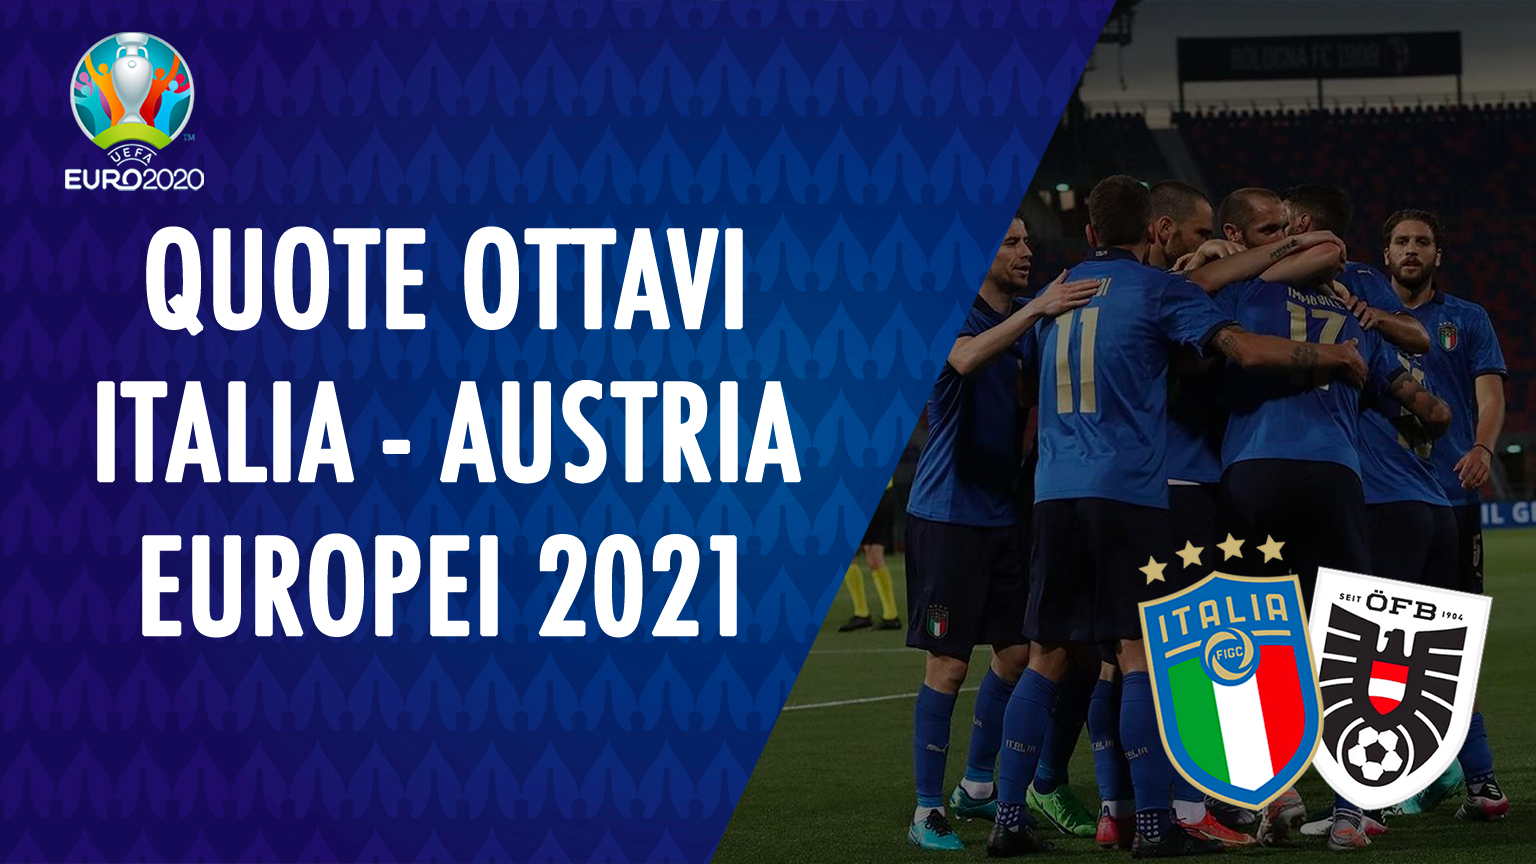 italia-austria-quote-europei-2021-euro-2020-scommesse-quota